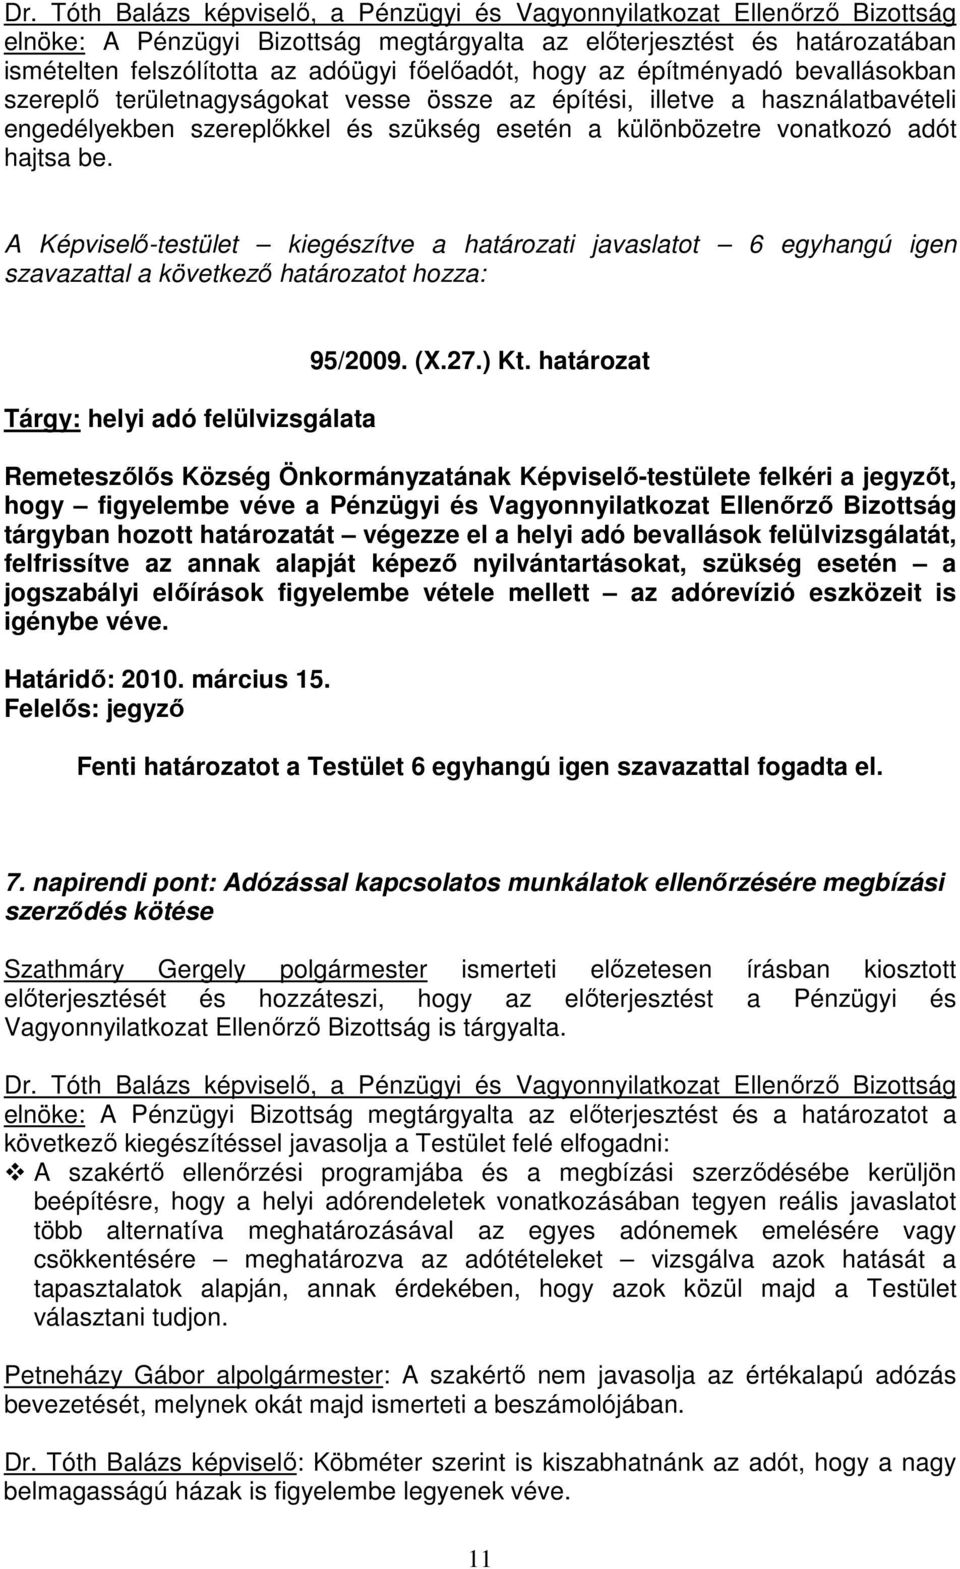 hajtsa be. A Képviselı-testület kiegészítve a határozati javaslatot 6 egyhangú igen szavazattal a következı határozatot hozza: Tárgy: helyi adó felülvizsgálata 95/2009. (X.27.) Kt.